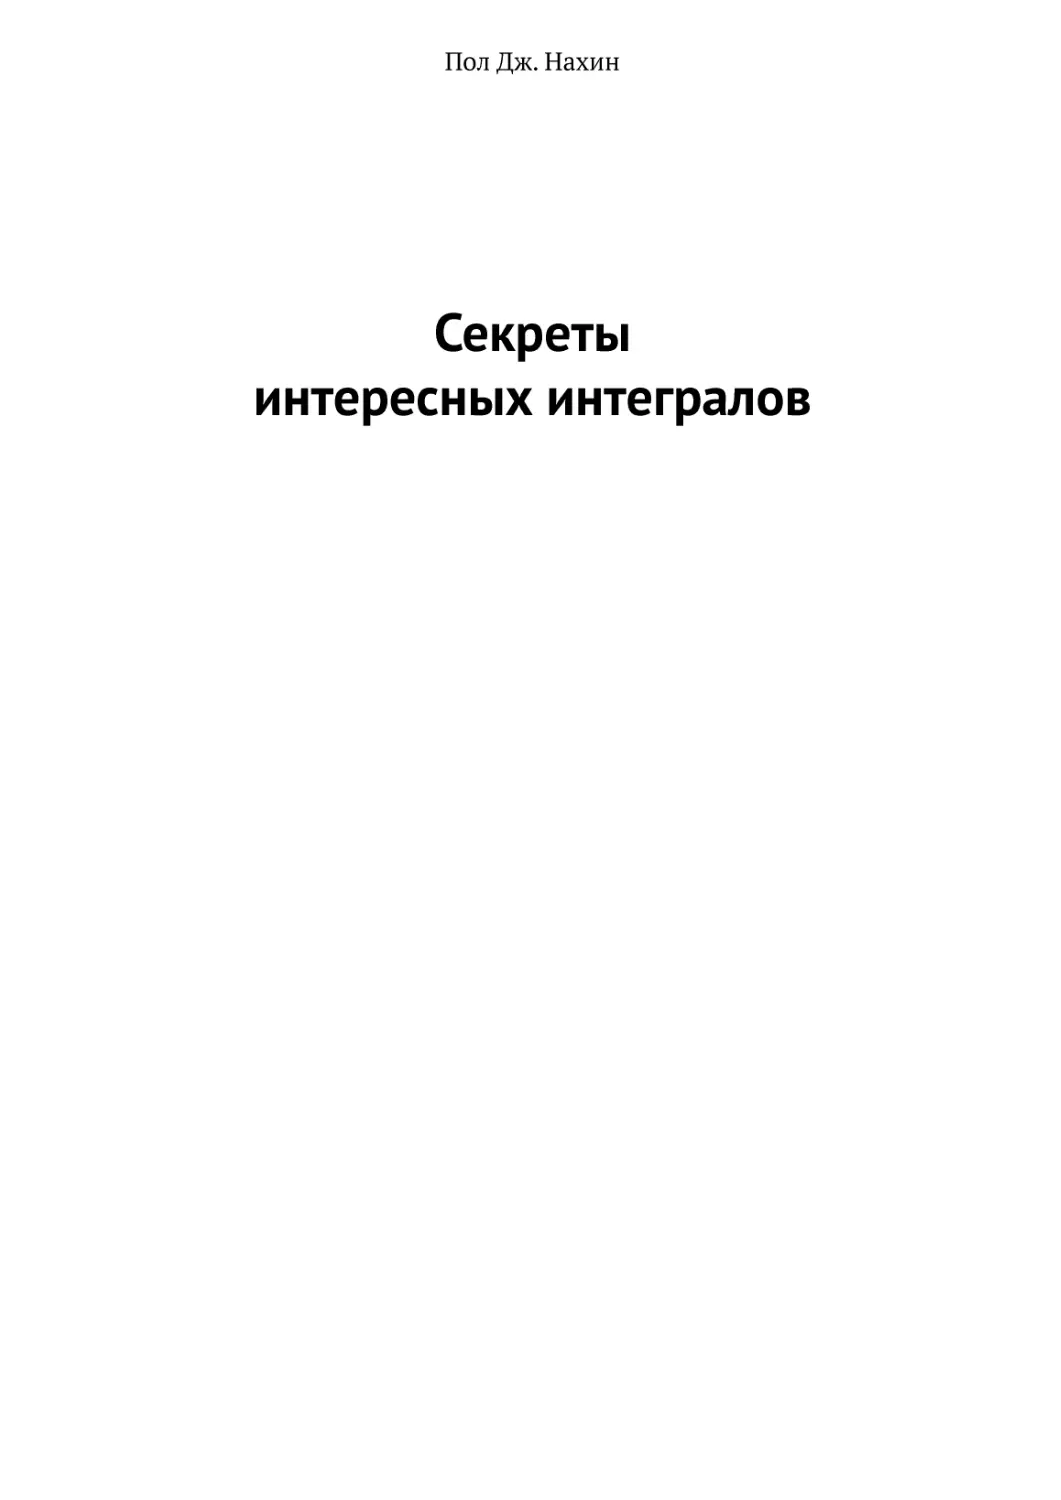 Секреты интересных интегралов_14-01-2020.pdf